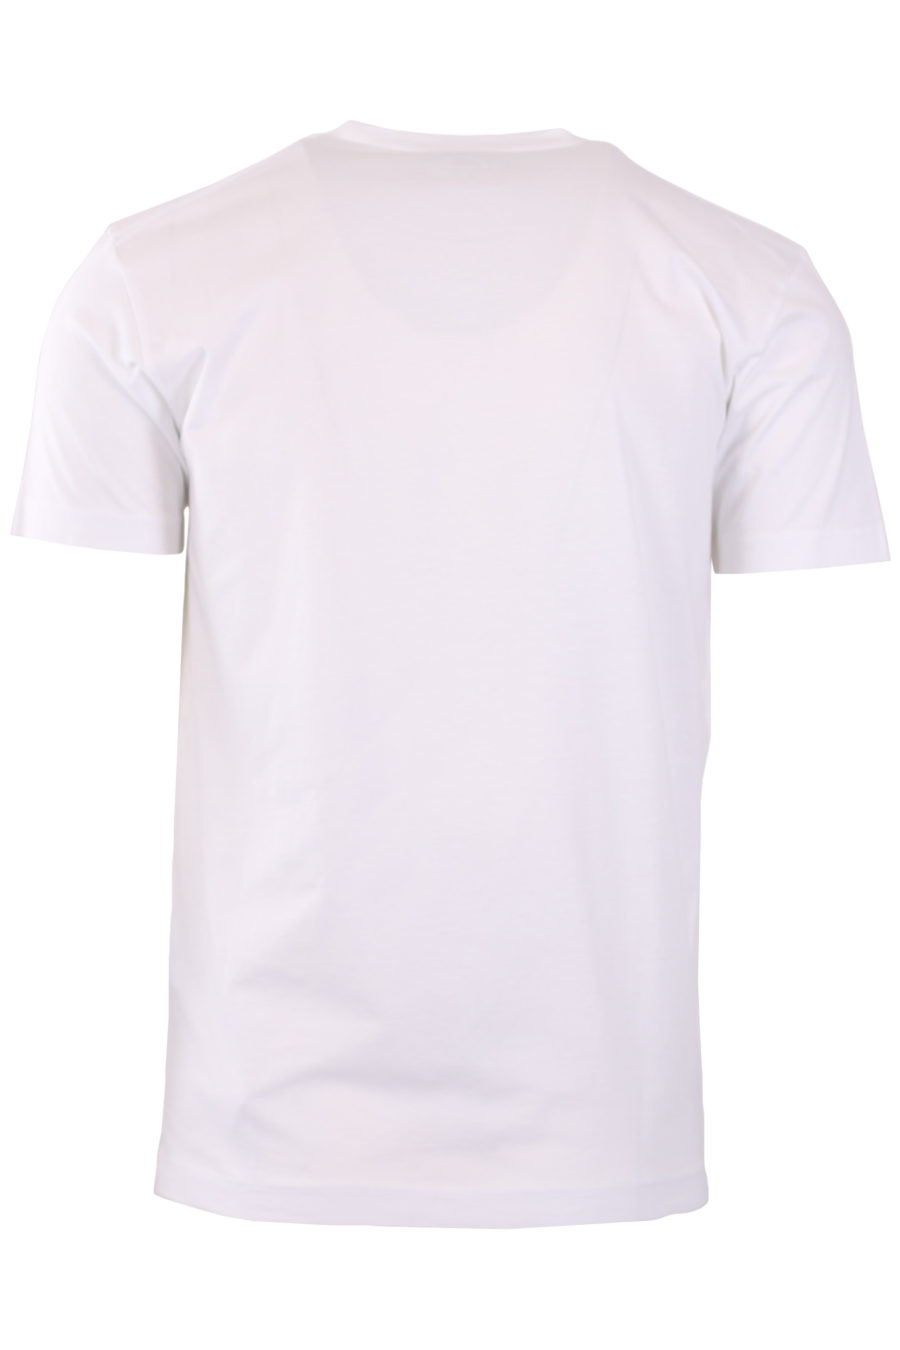 Camiseta blanca con logotipo en cuadro - 530941cda3190dc2d70956a64243557a47cd3560